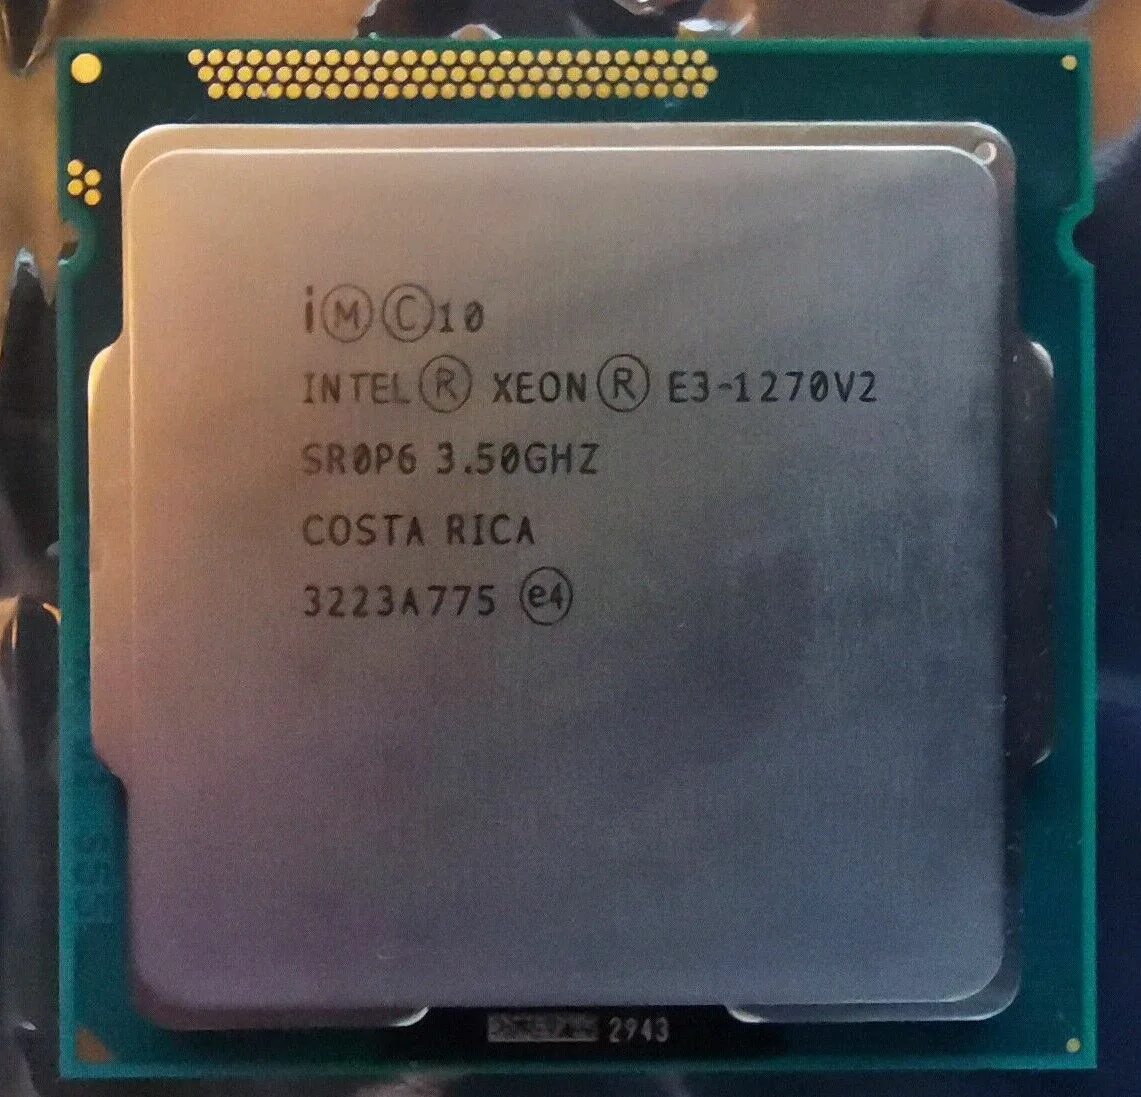 Процессор Intel Xeon e3-1270 v2 lga1155. Xeon e3 1270 v3. Intel Xeon 1270. Intel Xeon e3 1270 v2.